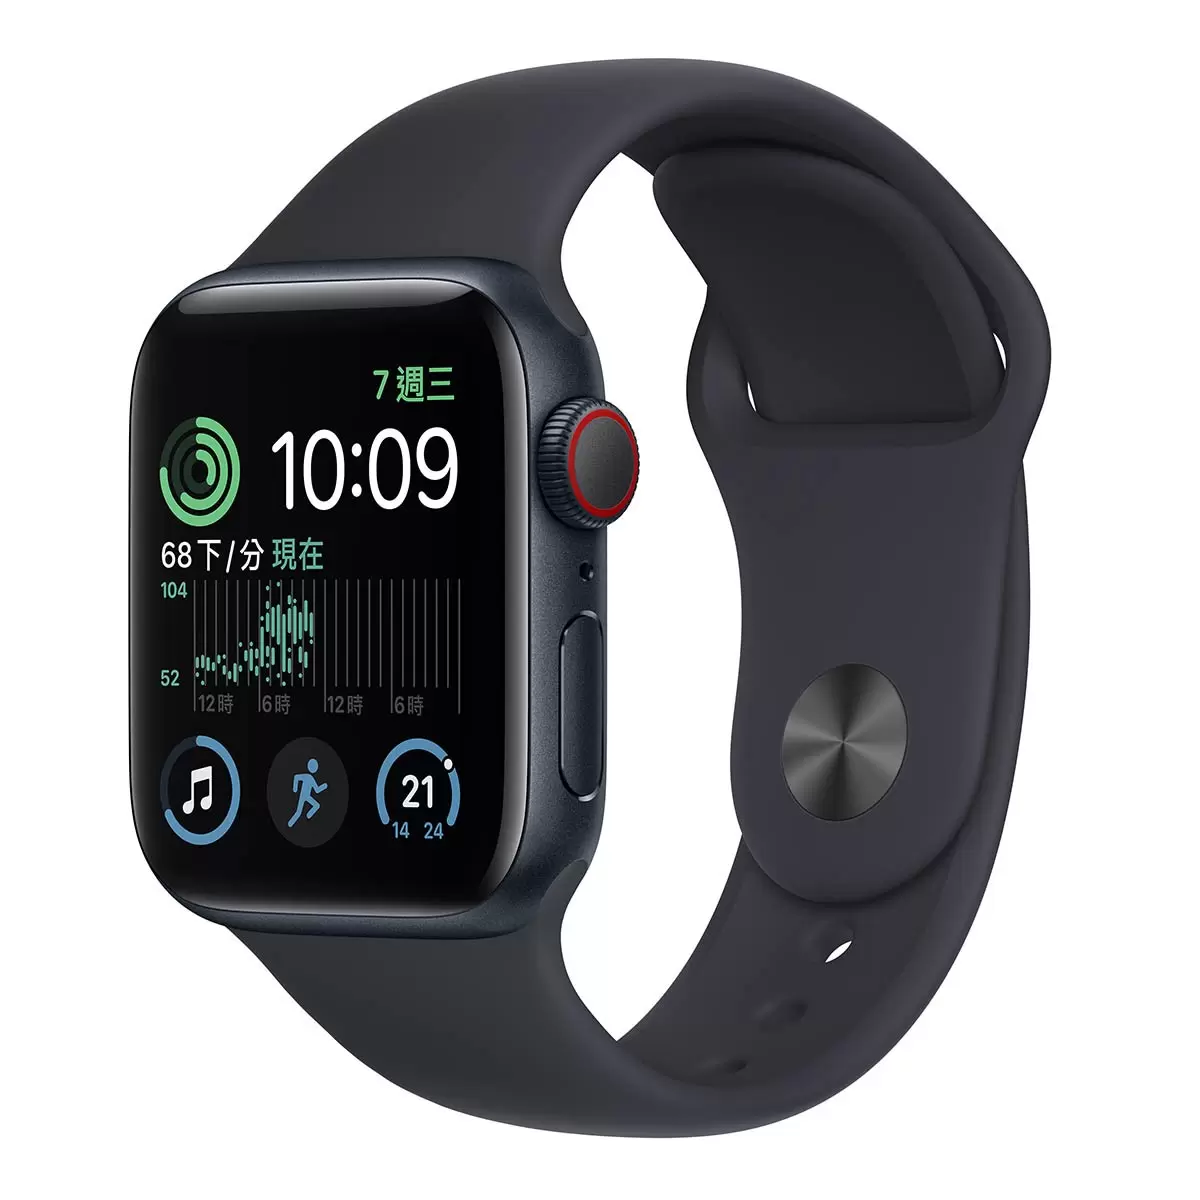 Apple Watch SE (GPS + 行動網路) 44公釐午夜色鋁金屬錶殼 午夜色運動型錶帶